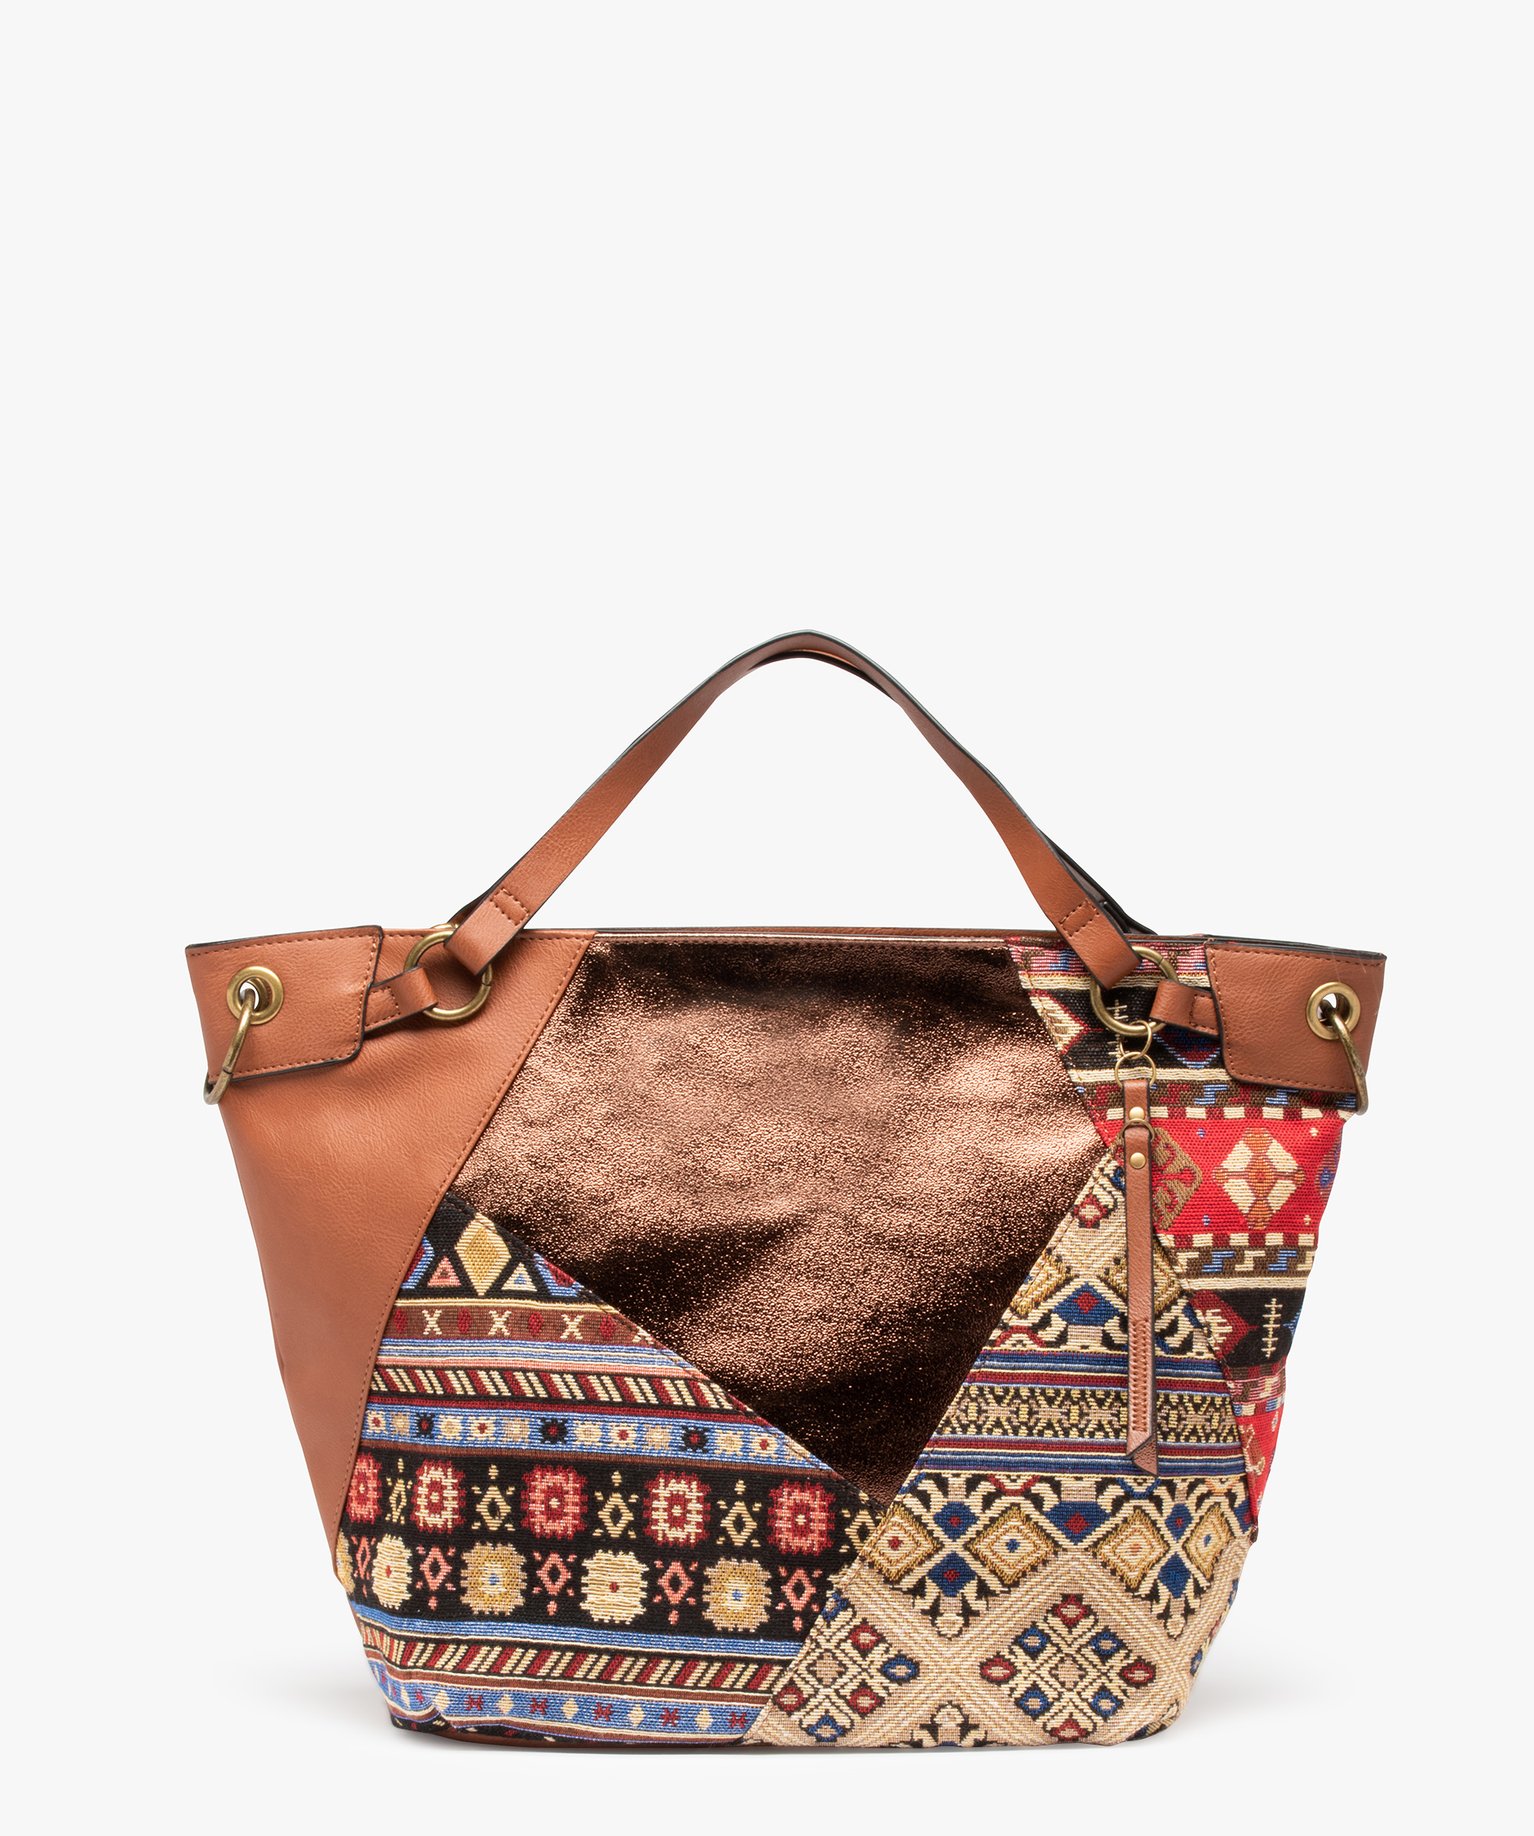 sac femme forme cabas avec devant en tapisserie brun sacs a main